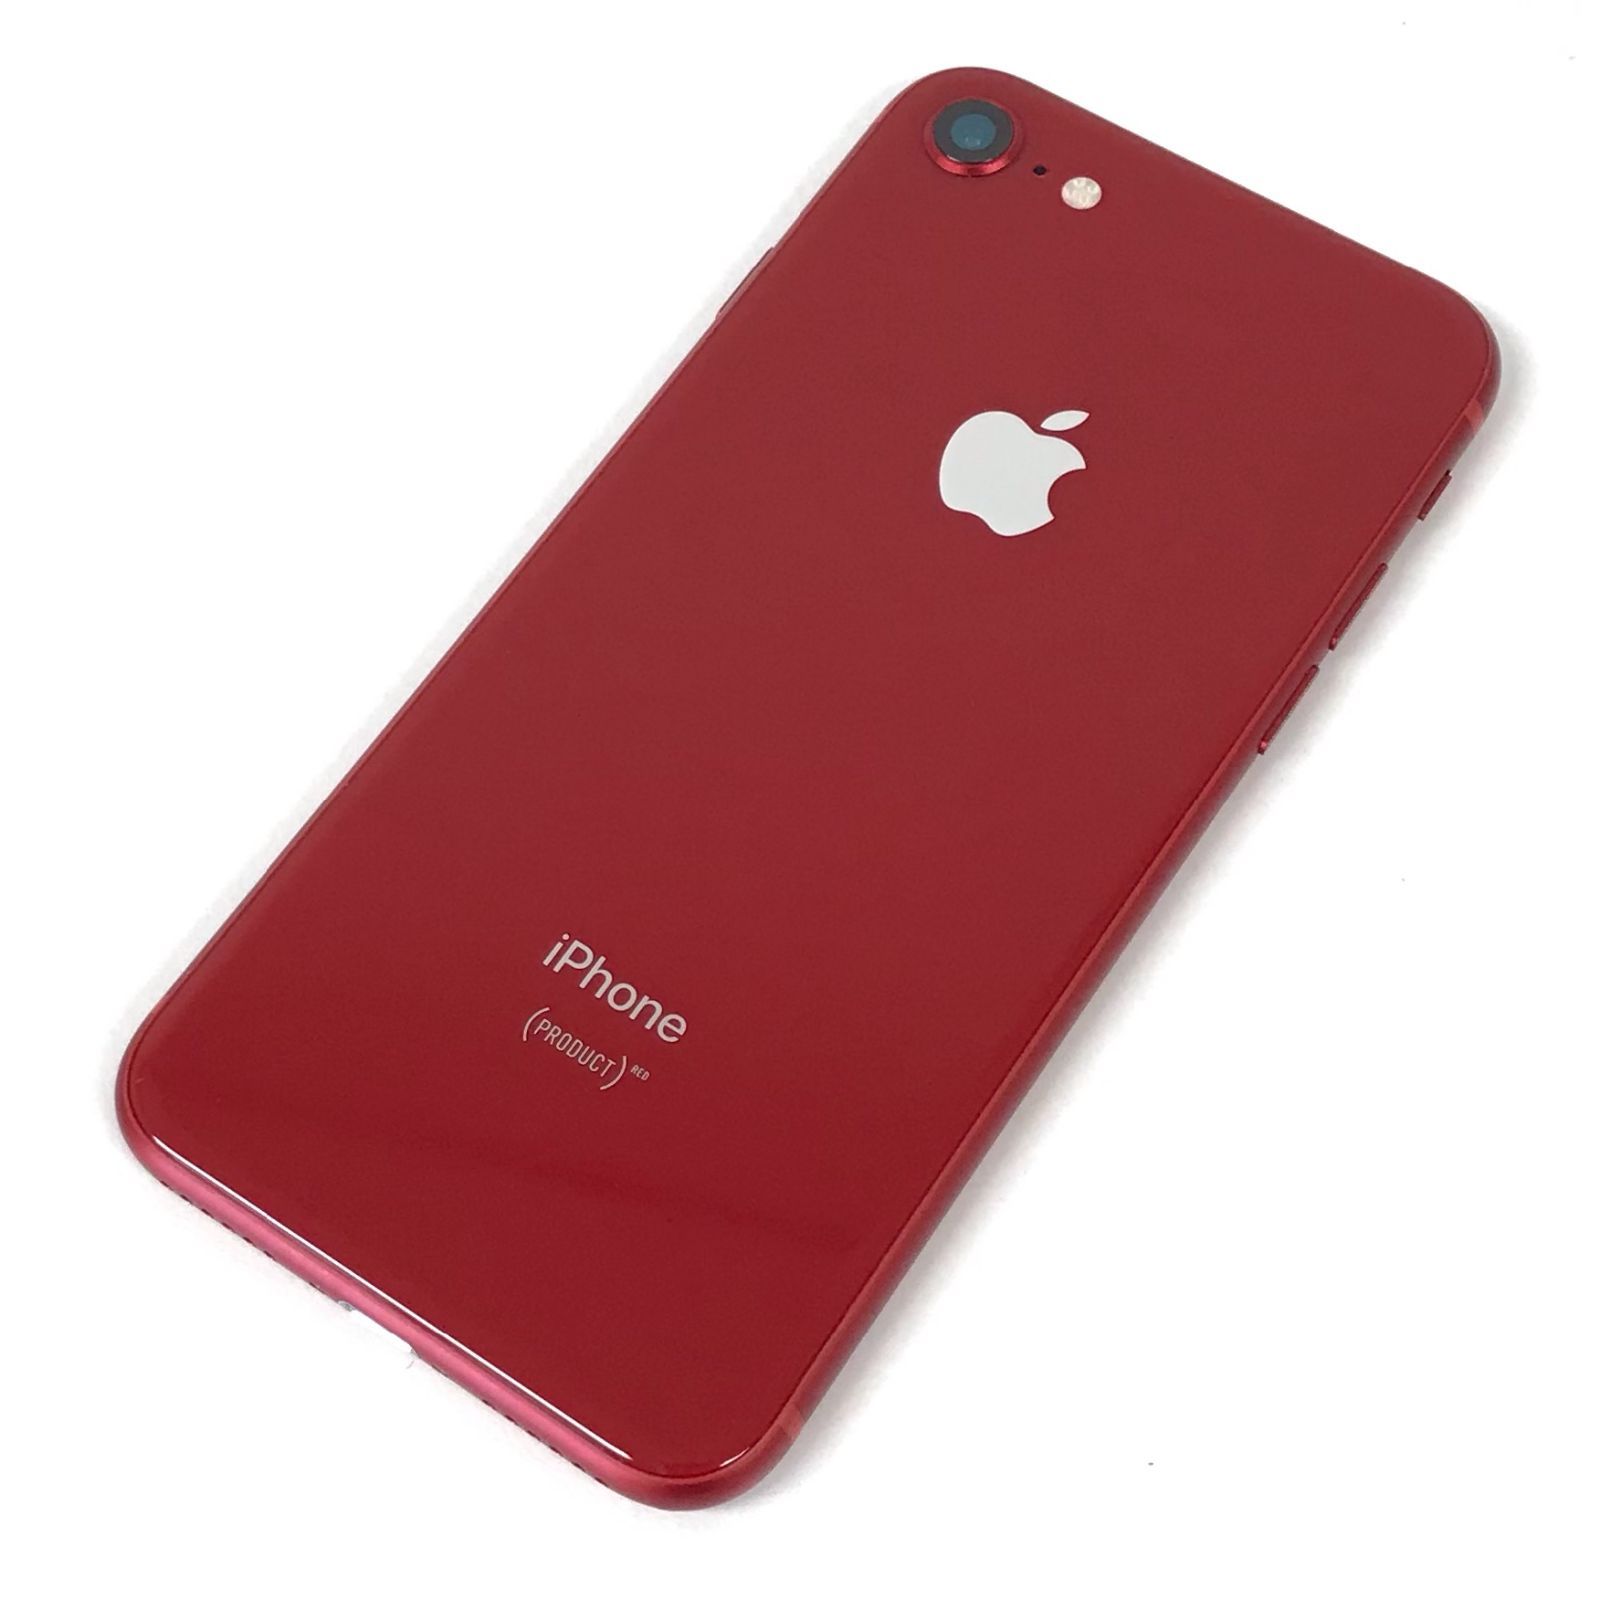 θ【SIMロックあり】iPhone 8 64GB RED MRRY2J/A - 買取ELITE メルカリ